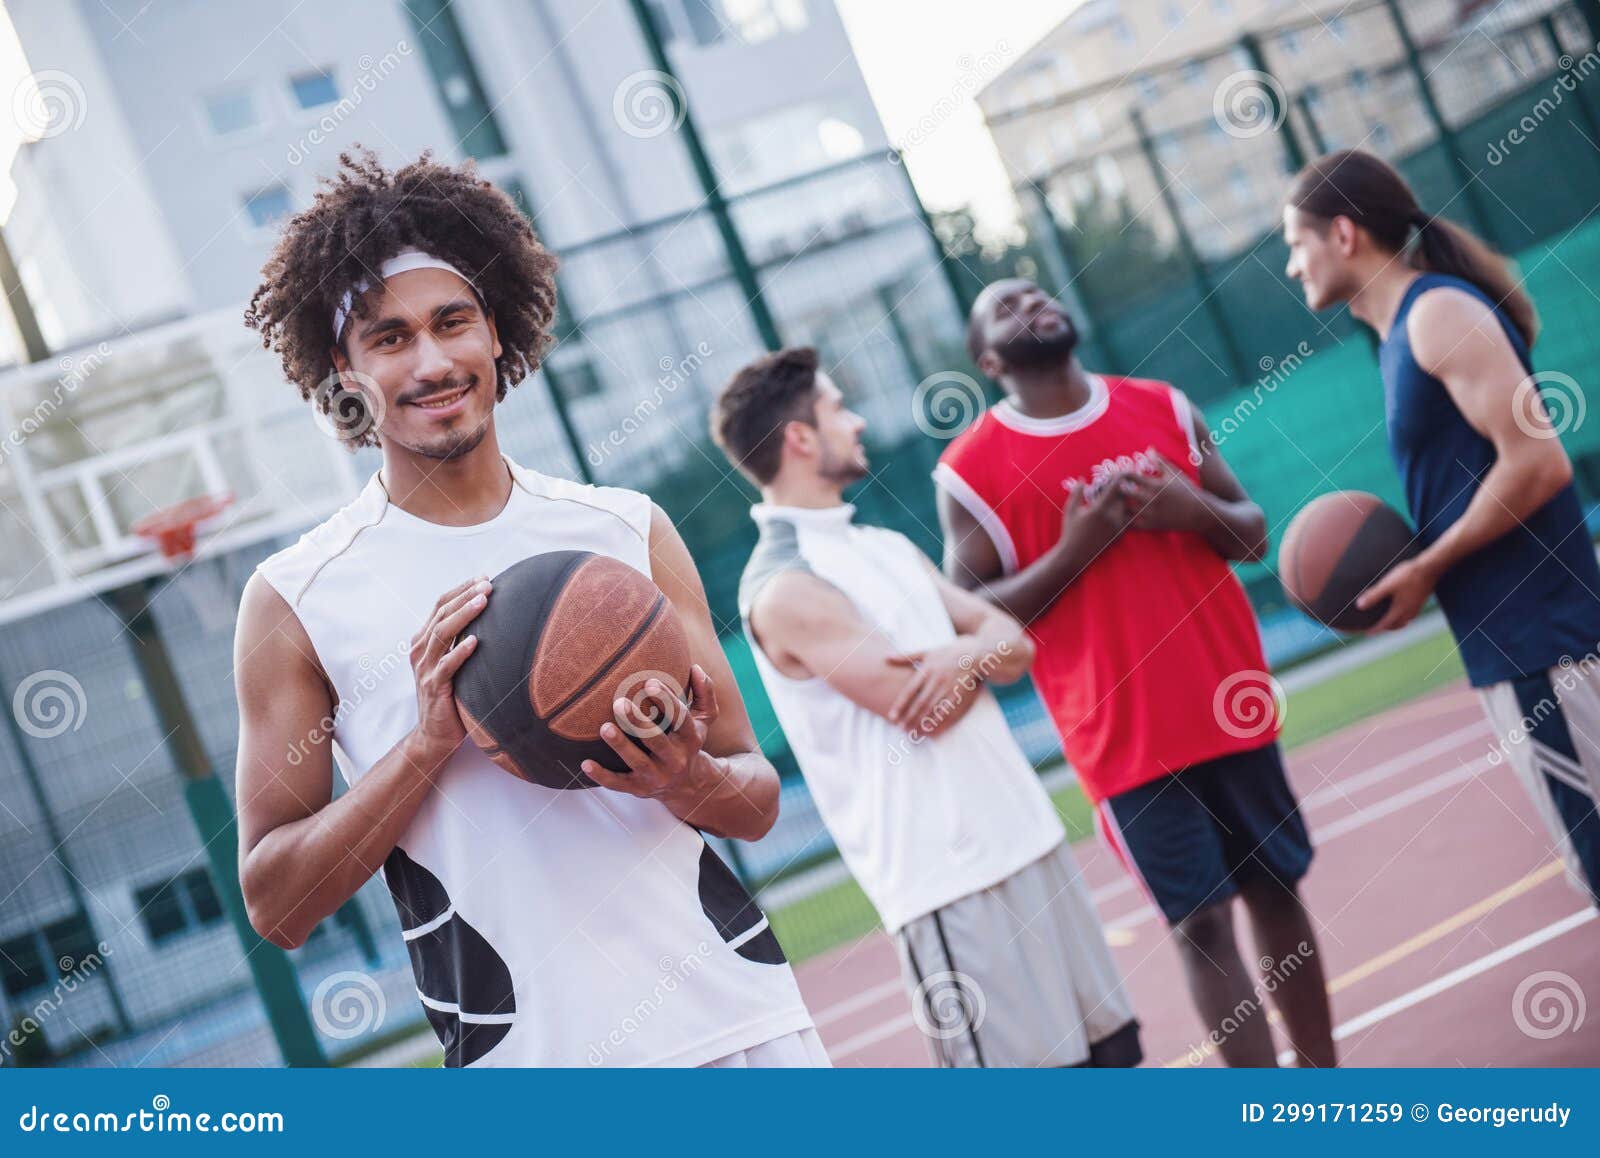 Guys playing basketball stock image. Image of cheerful - 299171259